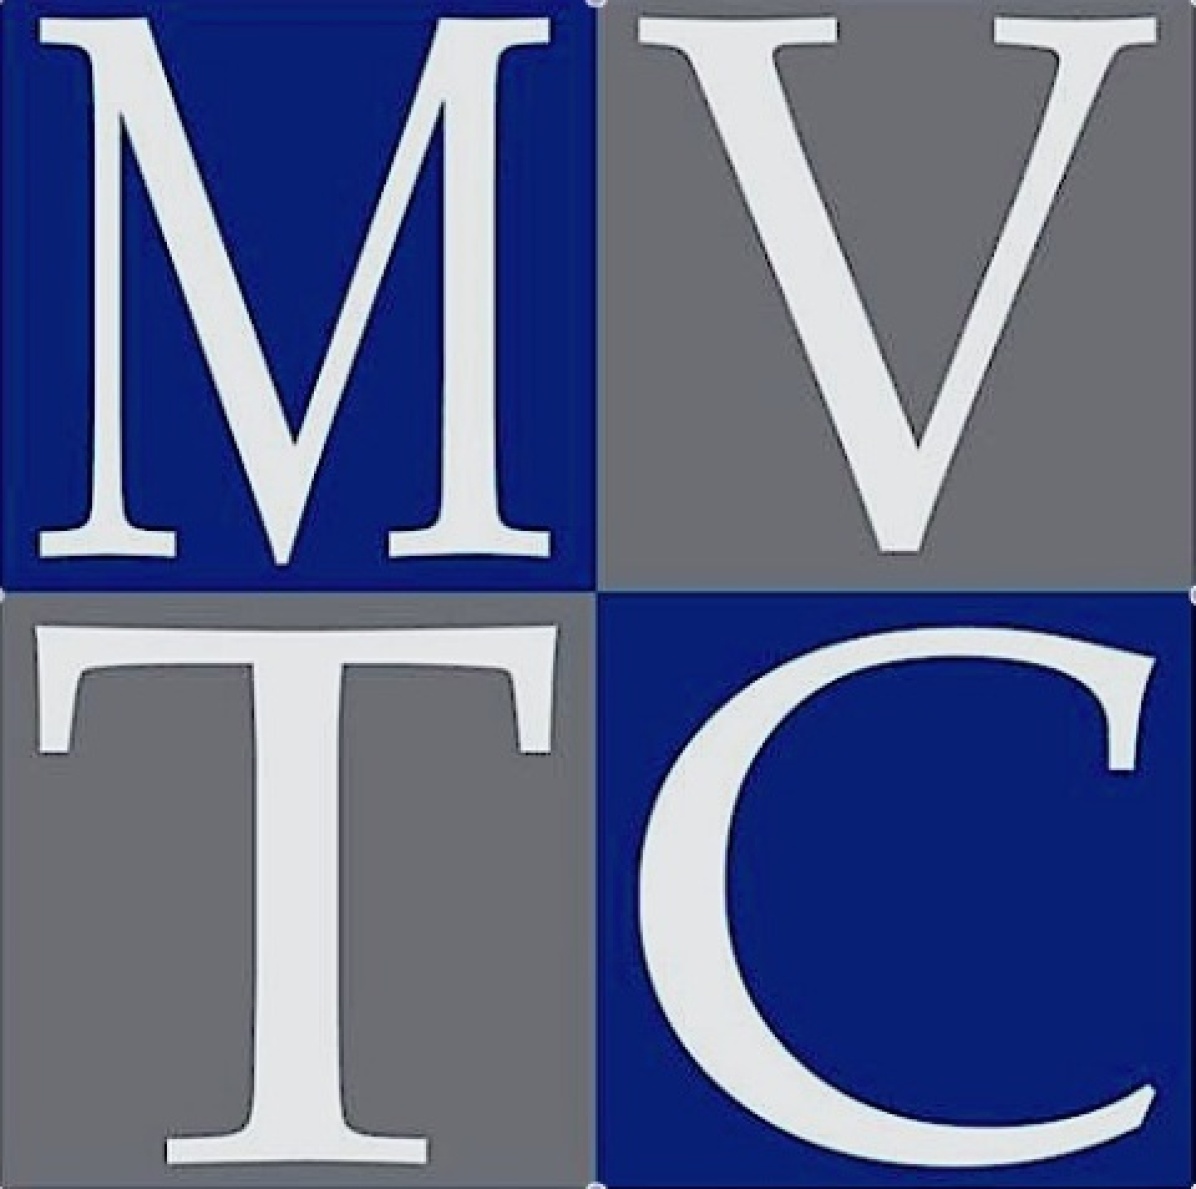 MVTC